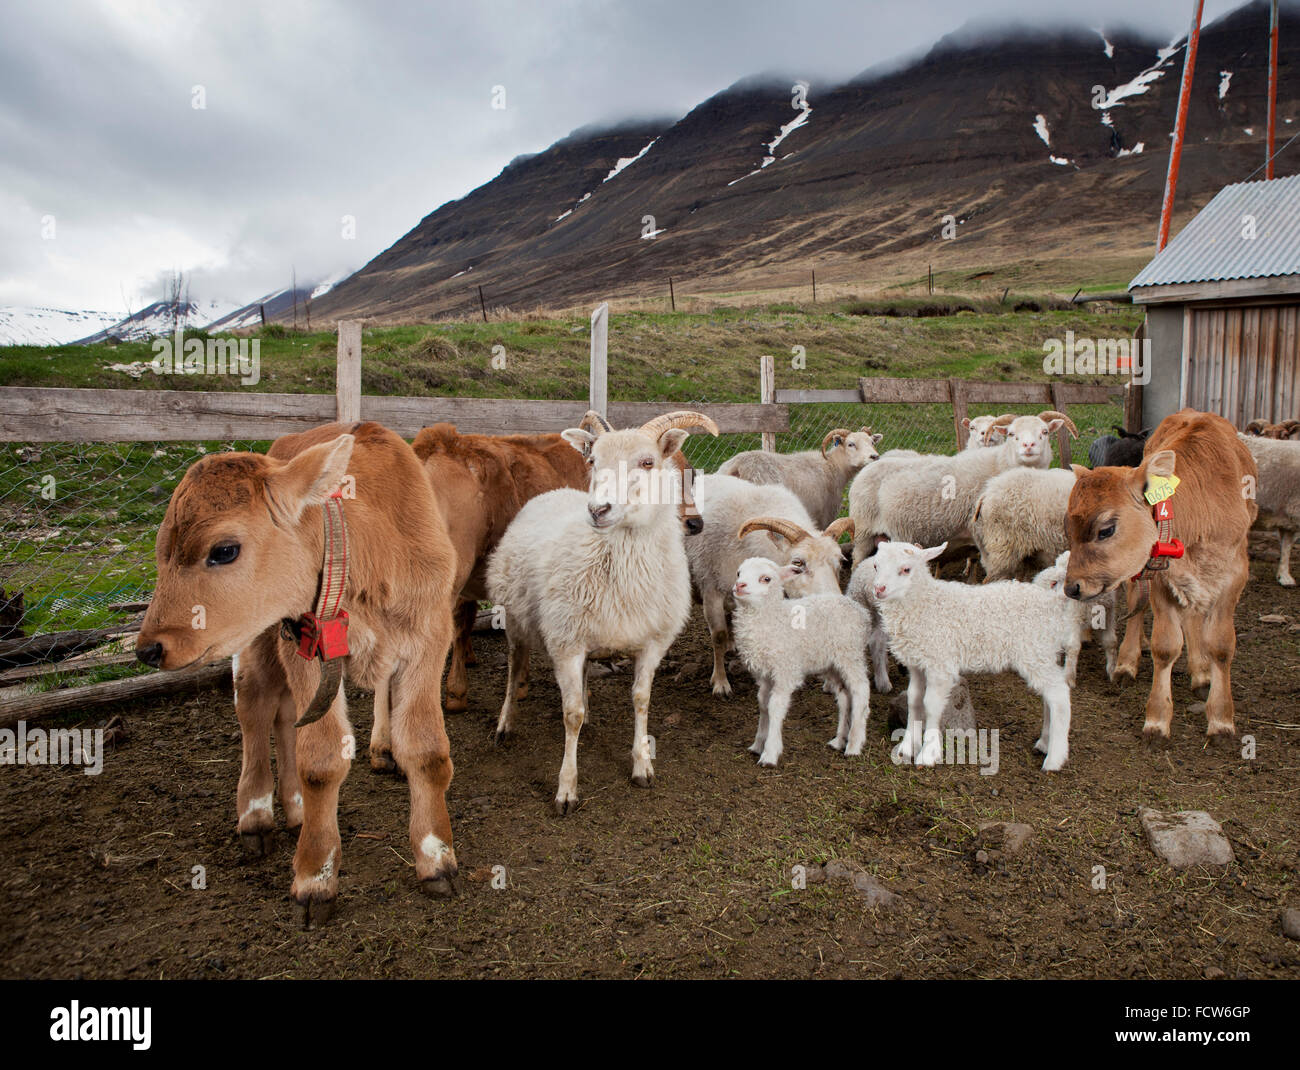 Les jeunes veaux et agneaux, Audbrekka Horgardalur ferme, vallée, Islande Banque D'Images